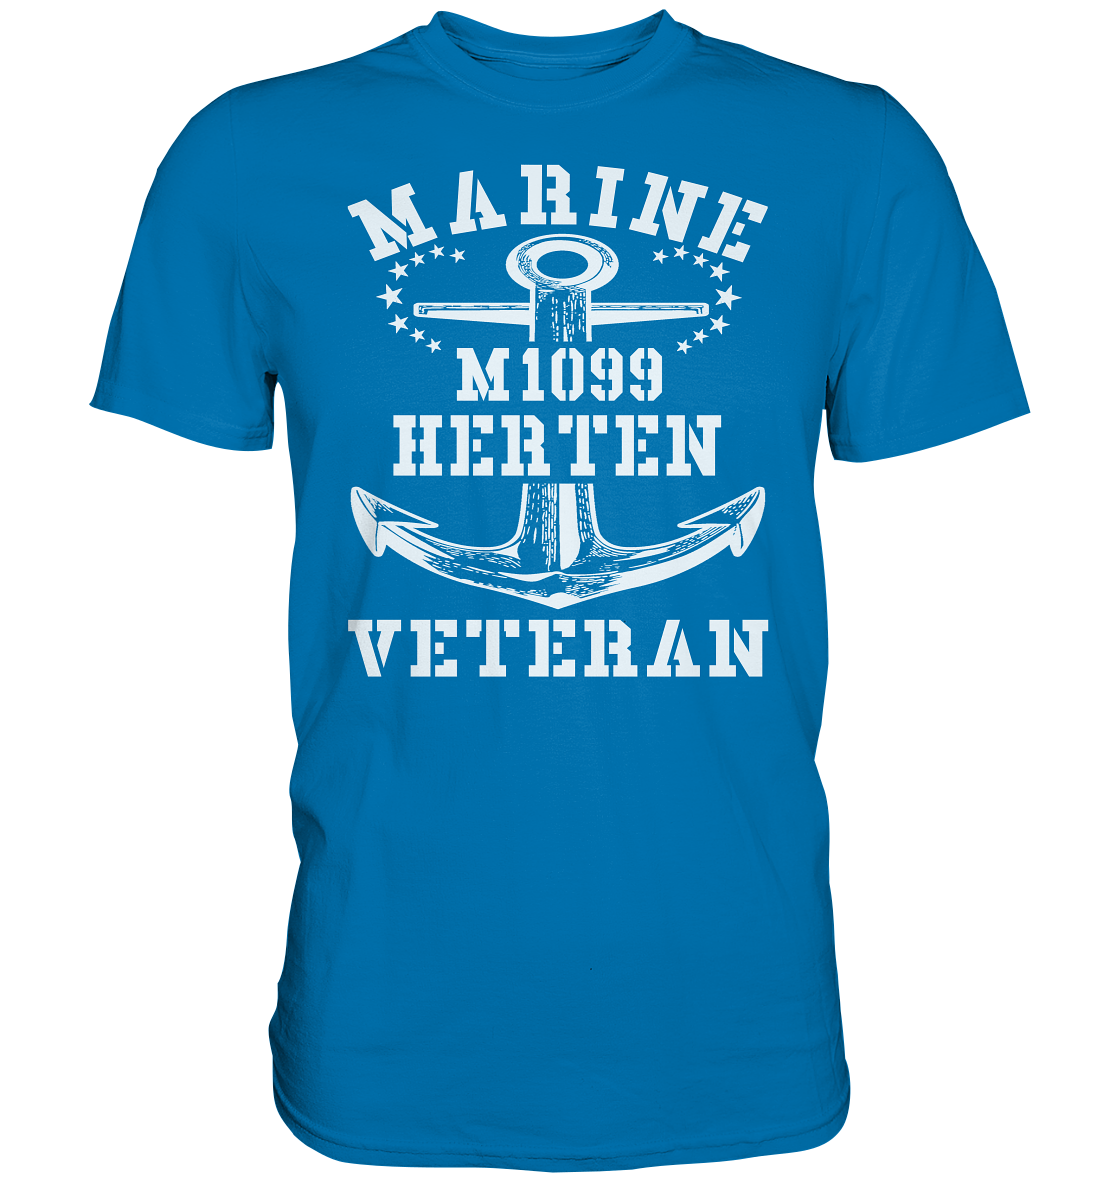 M1099 HERTEN Marine Veteran - Premium Shirt